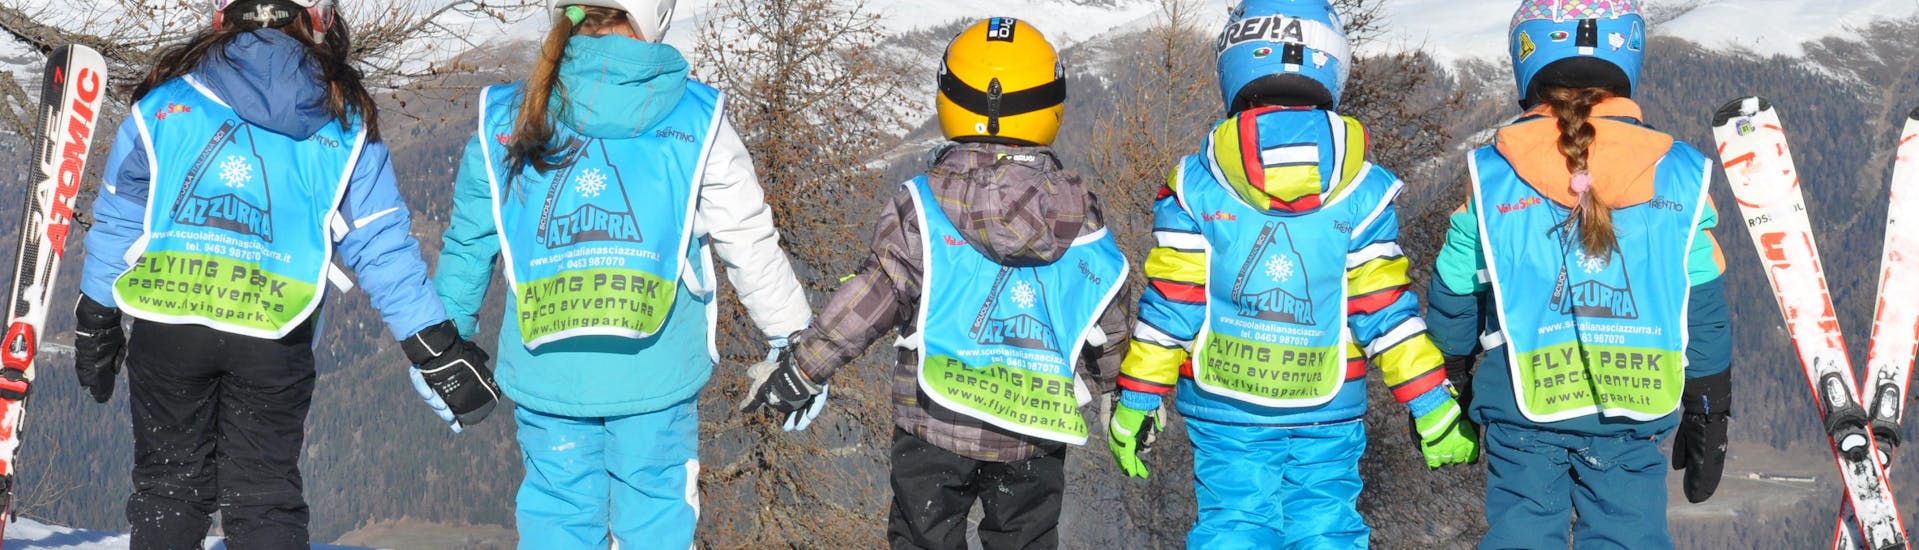 Snowboardkurs für Kinder für Anfänger - Baby Project.